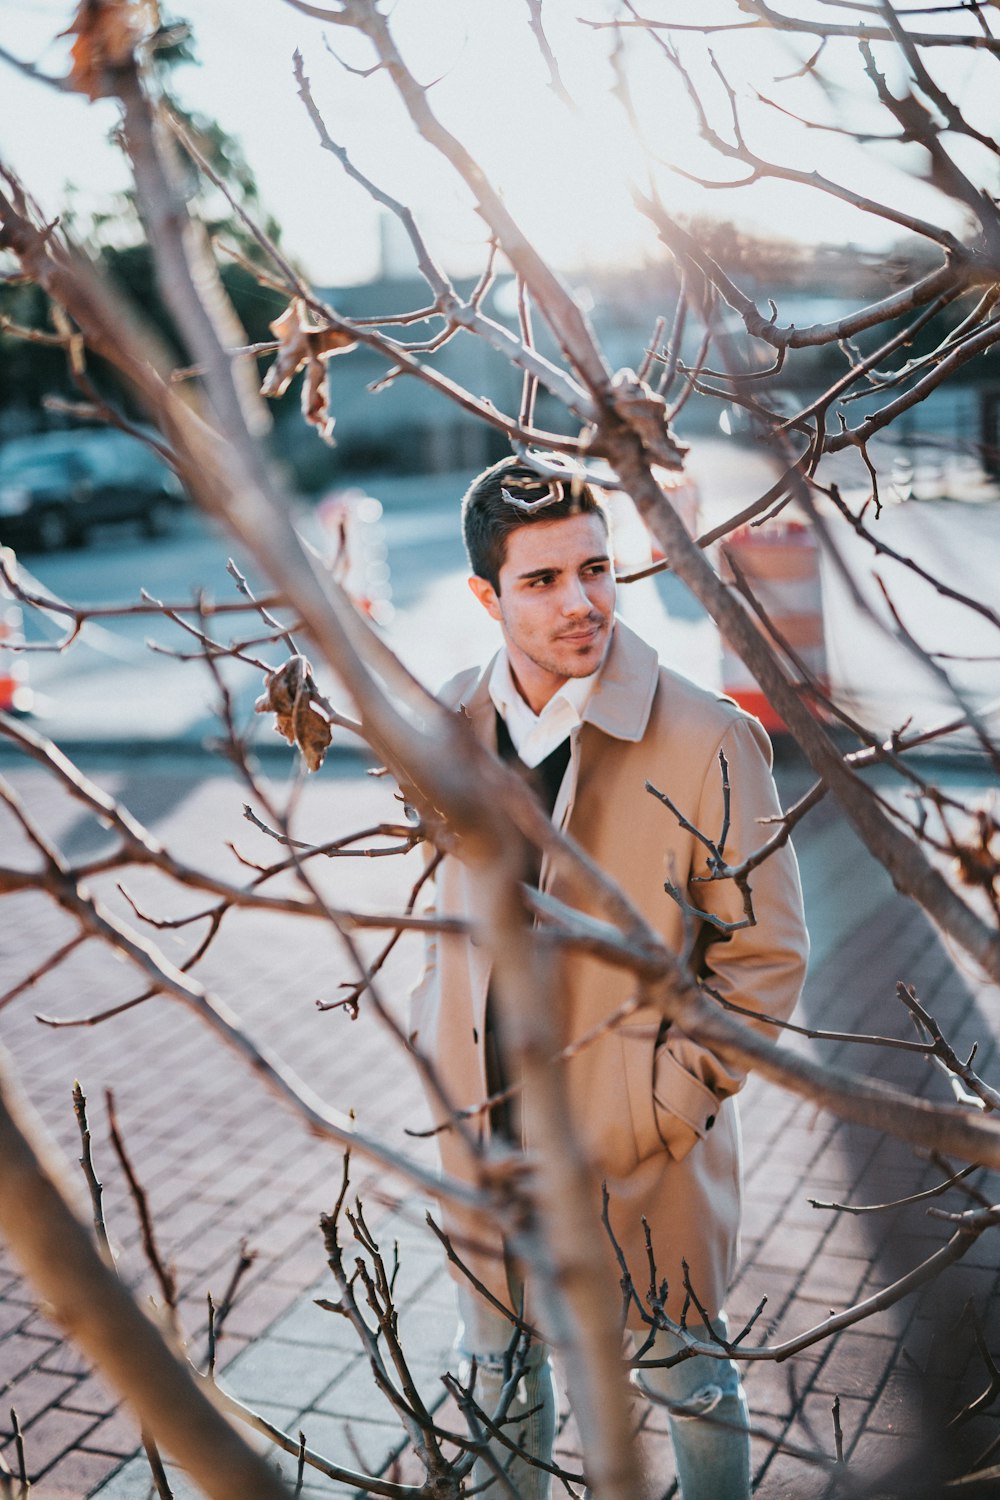 갈색 코트를 입은 남자가 나무 근처에 서 있다